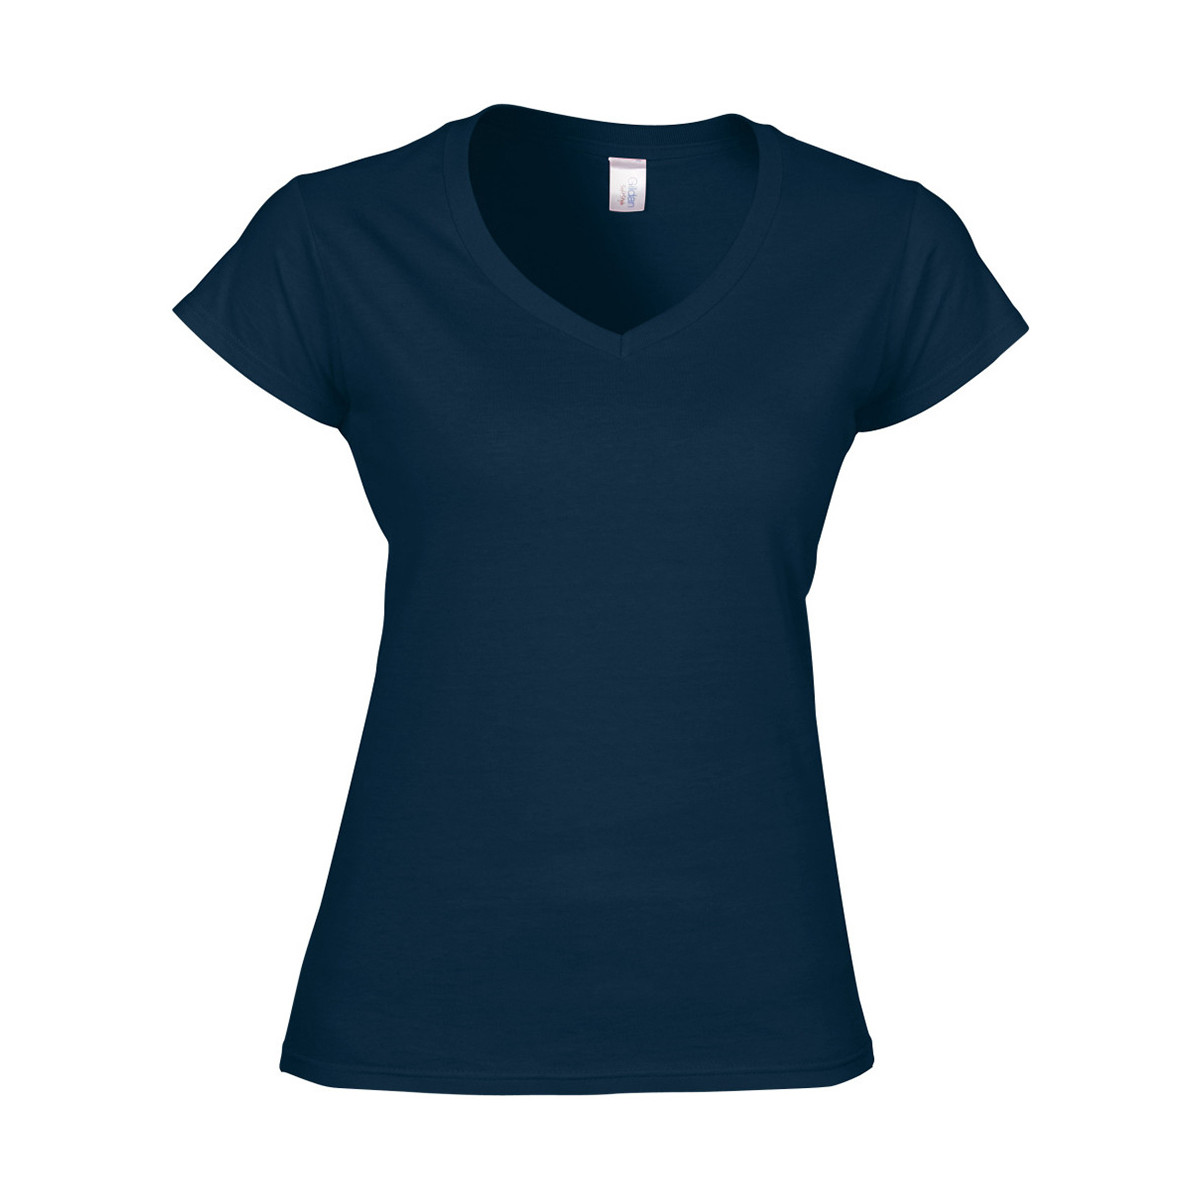 Abbigliamento Donna T-shirt maniche corte Gildan Soft Style Blu